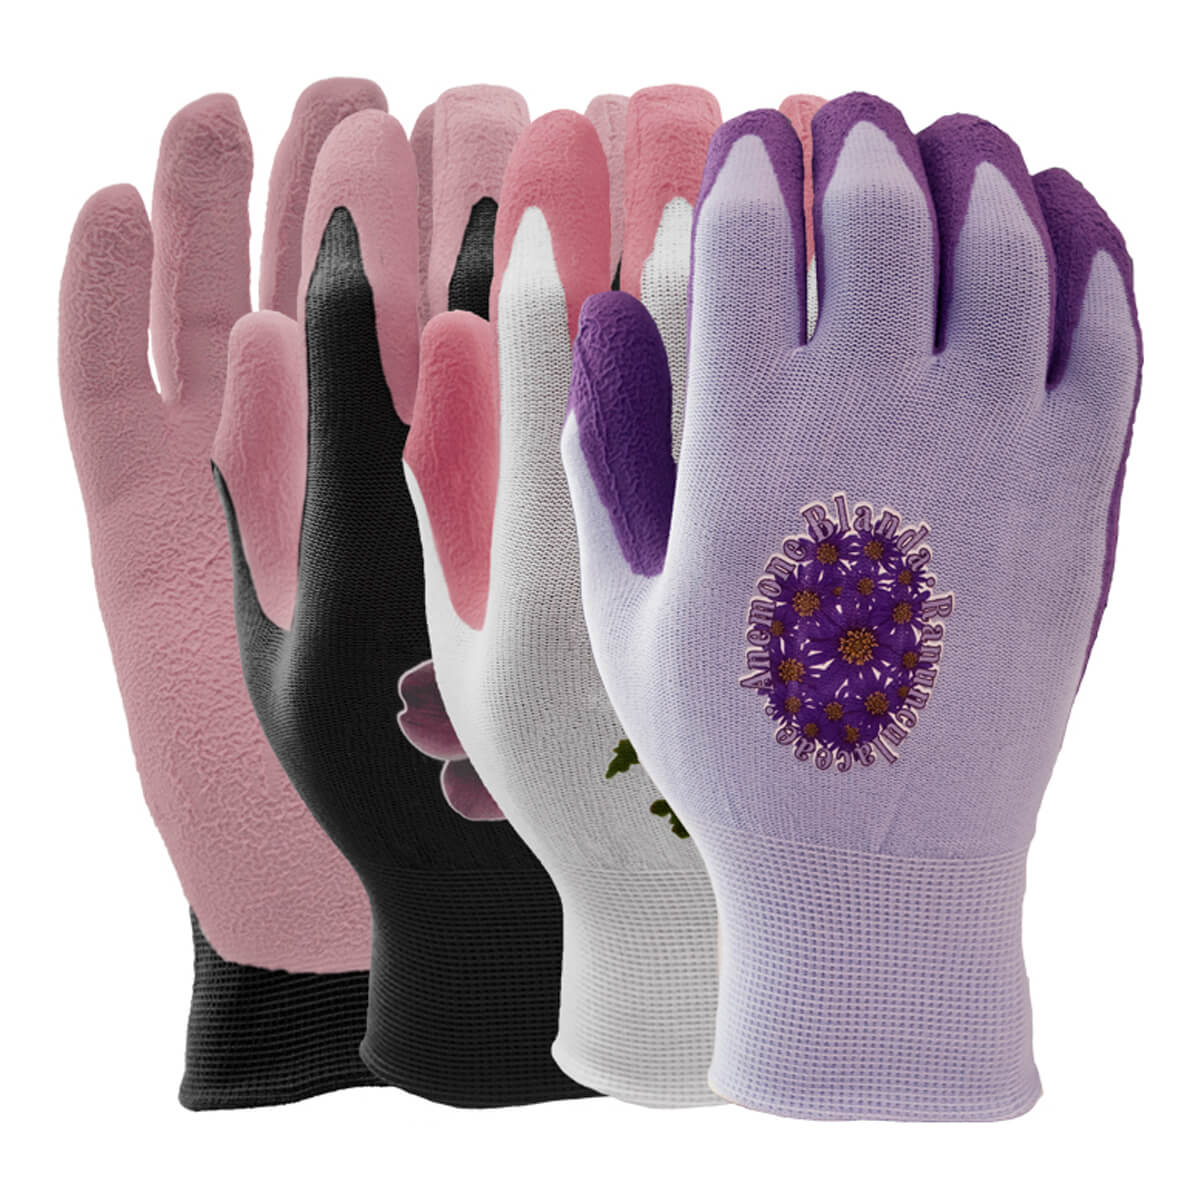 Botanical D-Lites Gloves - S